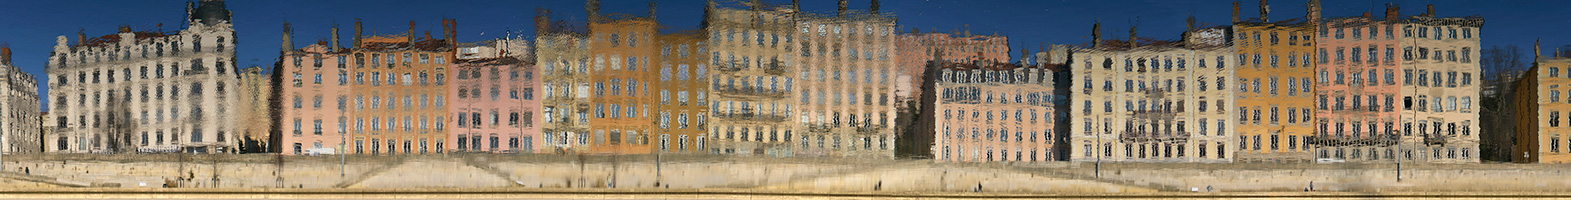 Reflet quai St Vincent sur la Saône, Lyon